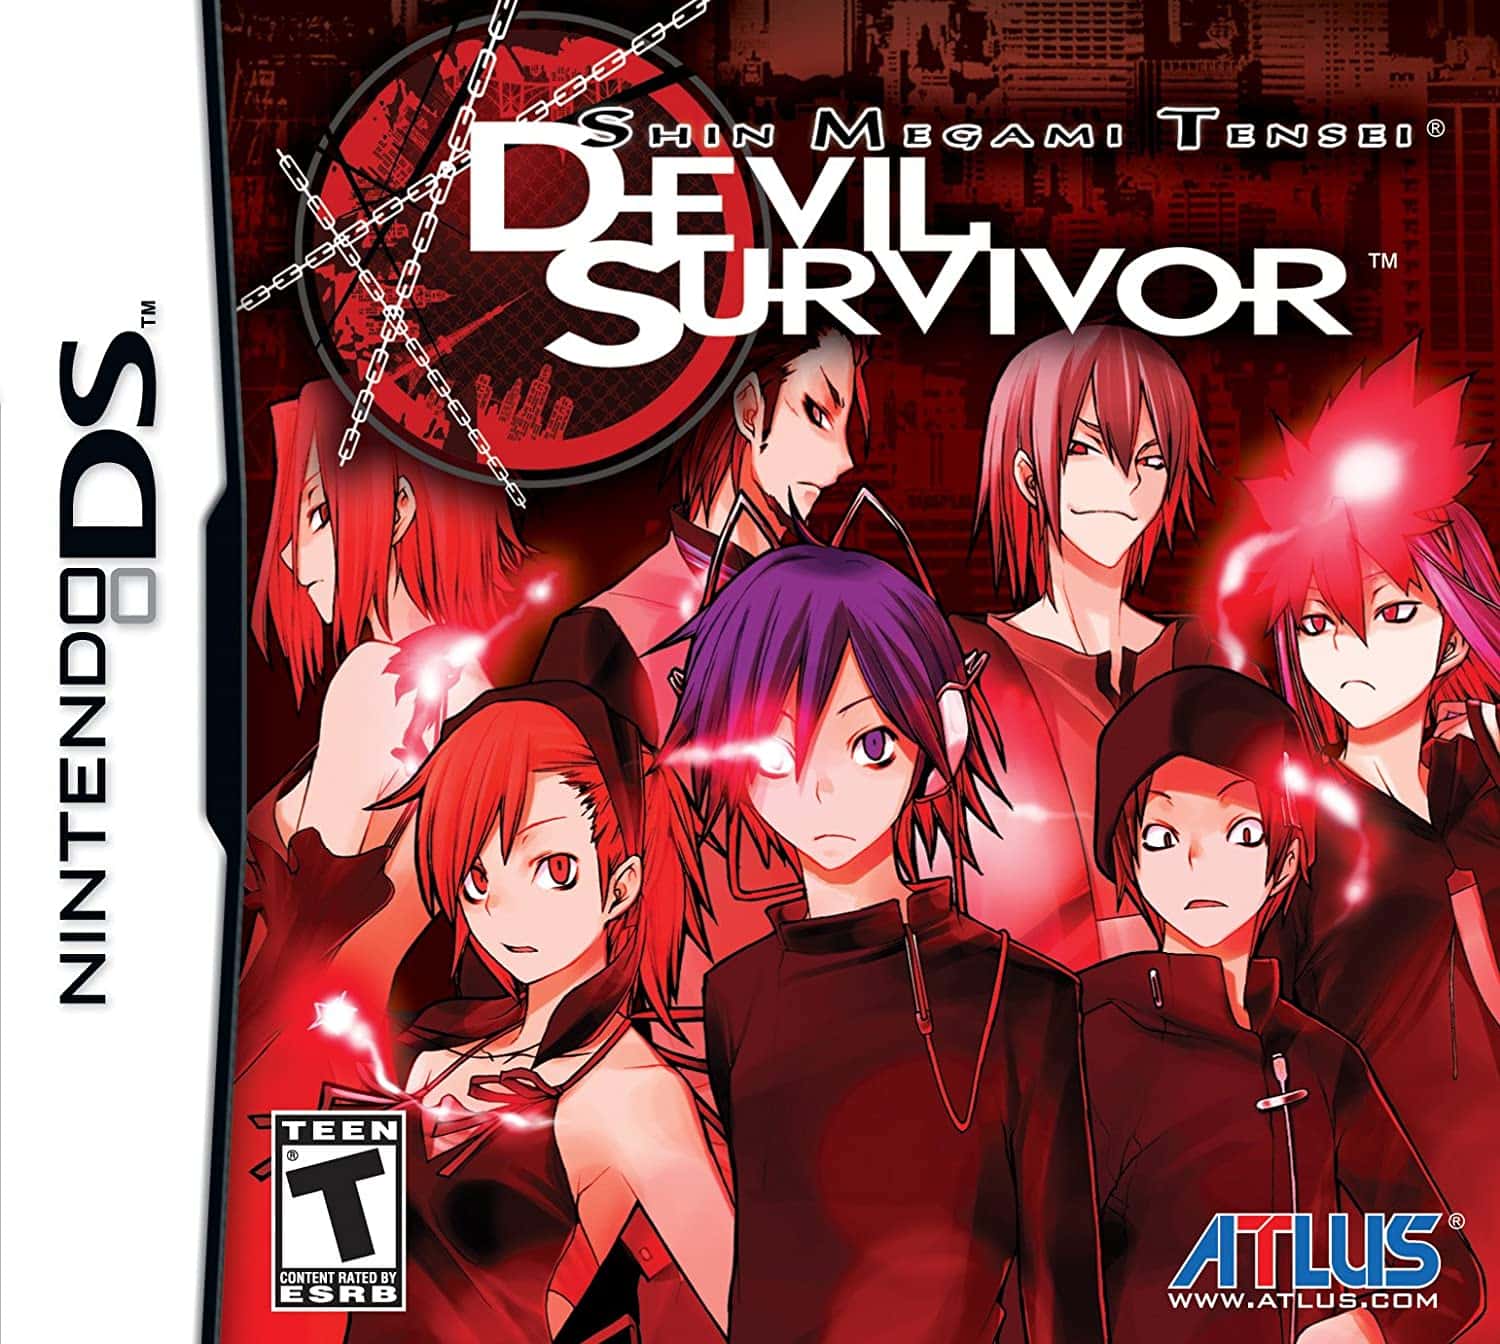 Shin Megami Tensei: Devil Survivor player count stats